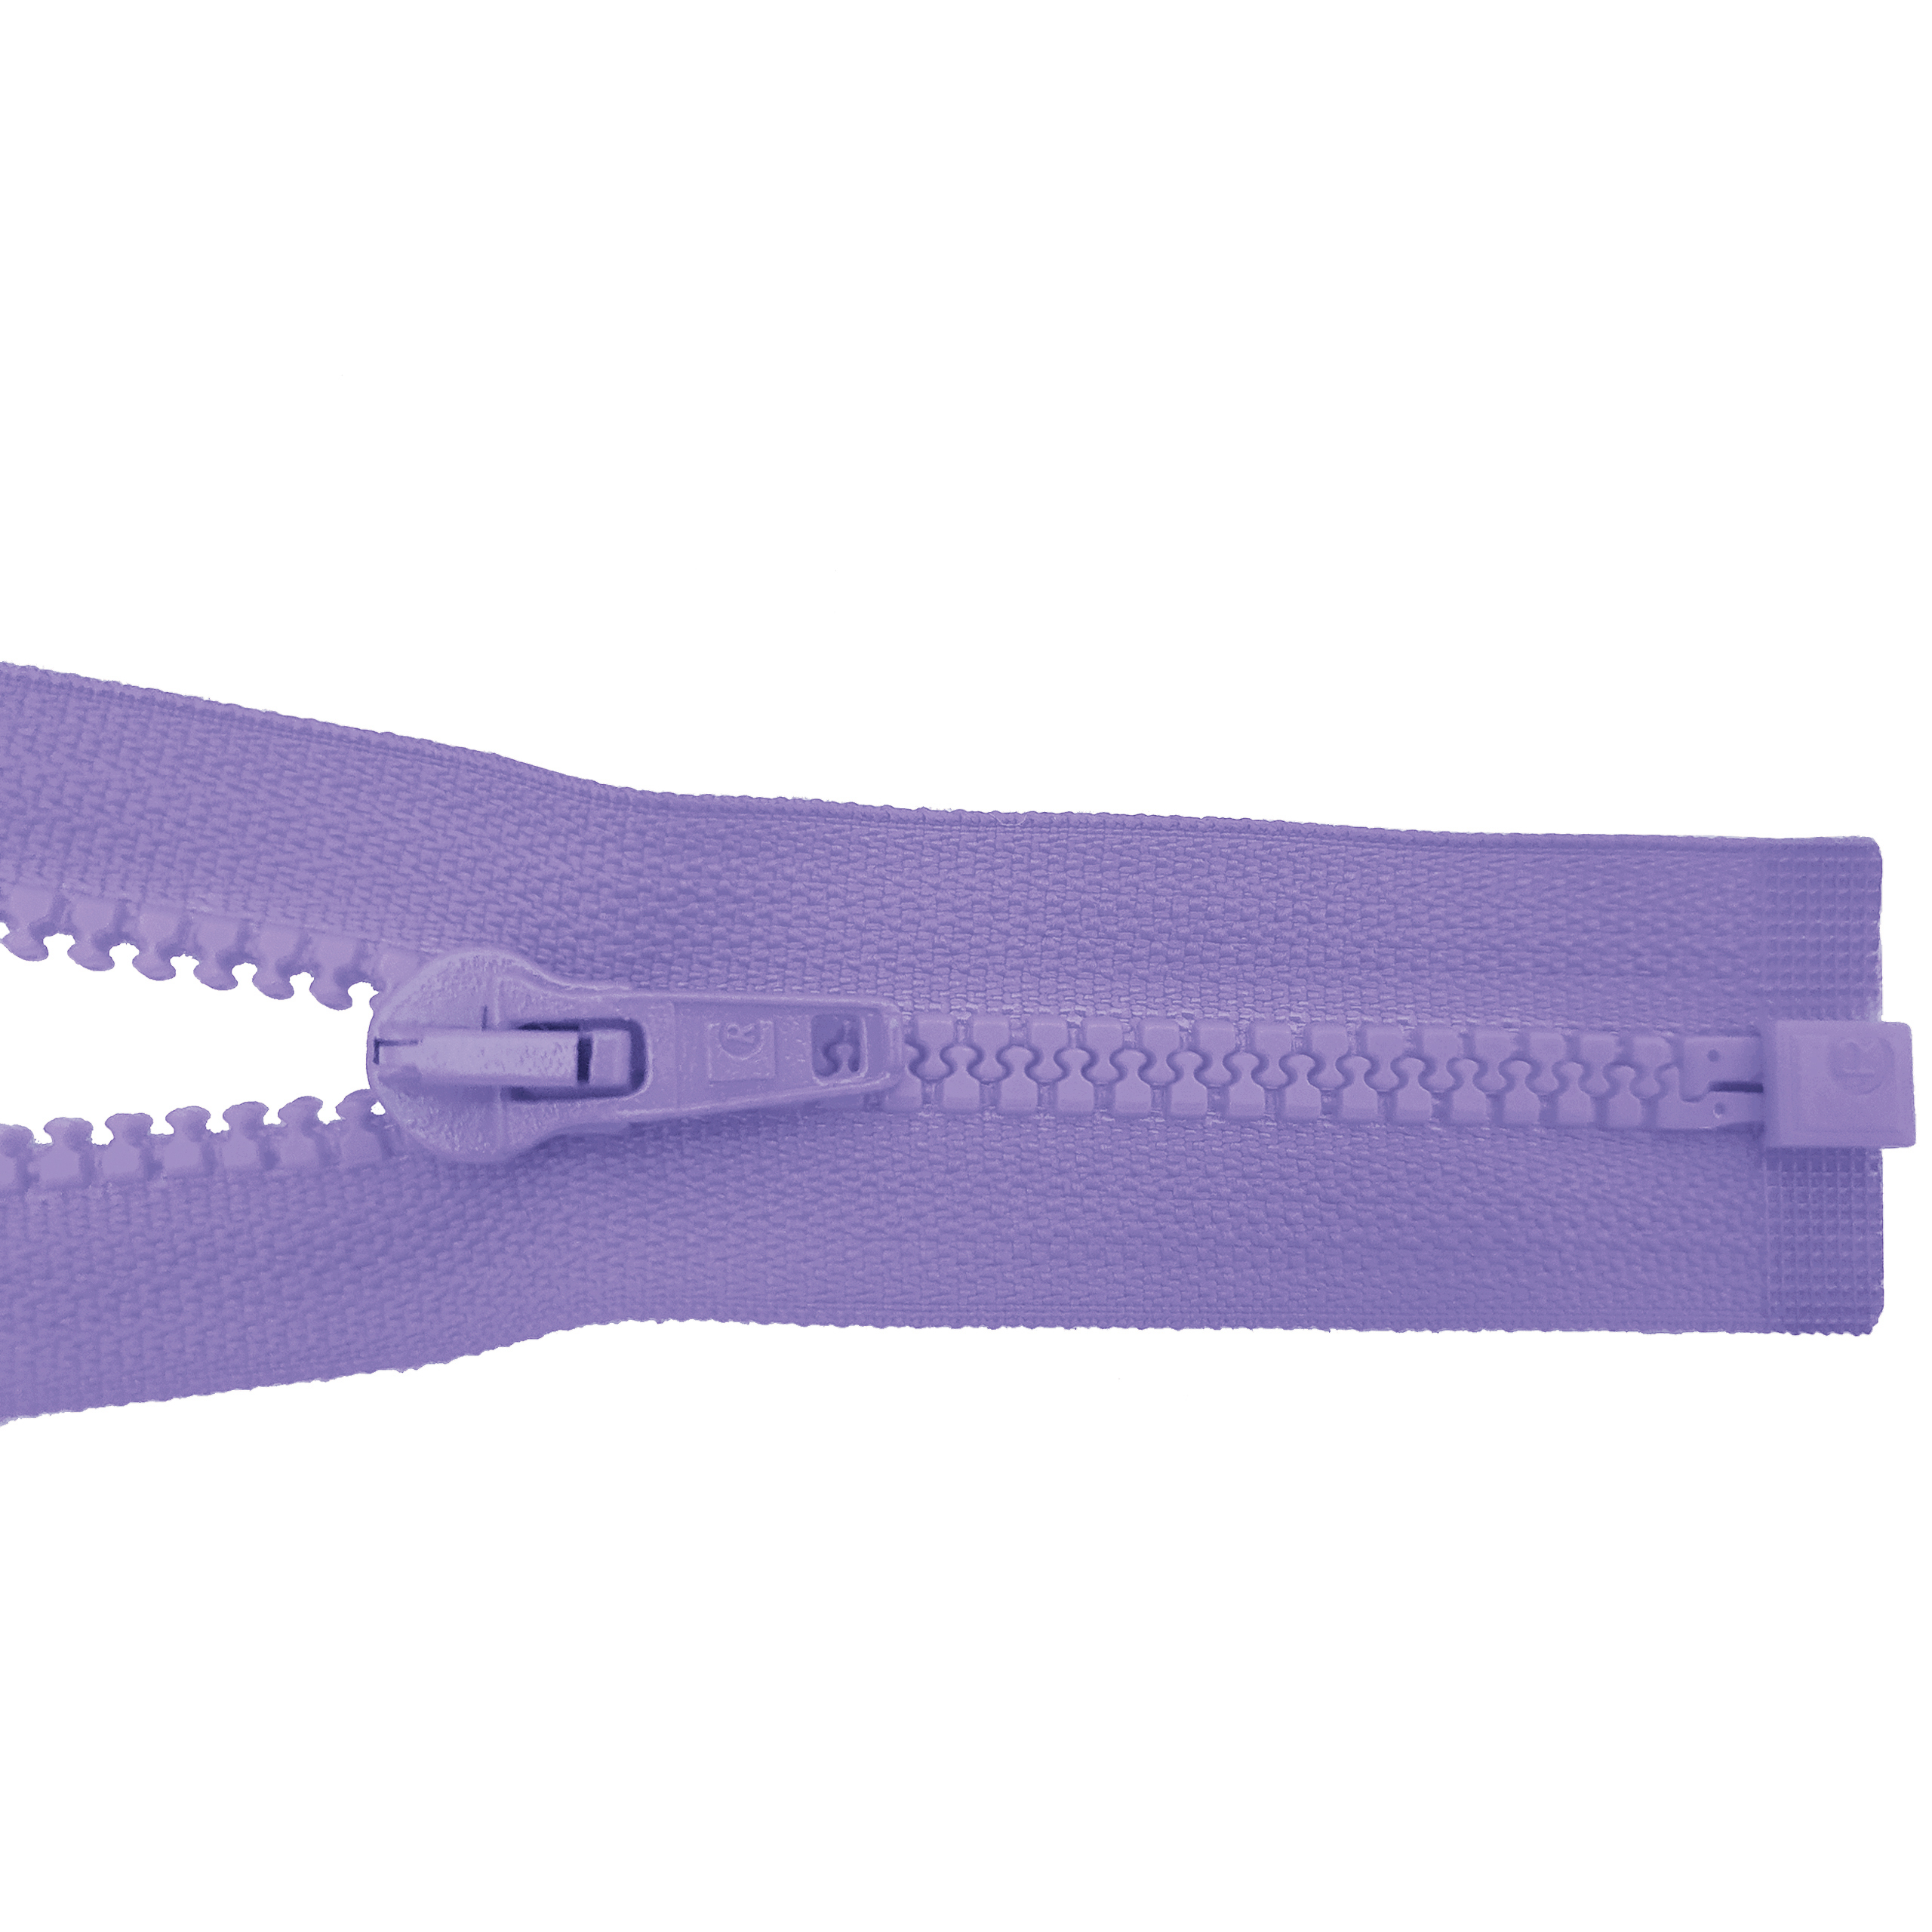 Reißverschluss 80cm, teilbar, Kstoff Zähne breit, flieder, hochwertiger Marken-Reißverschluss von Rubi/Barcelona